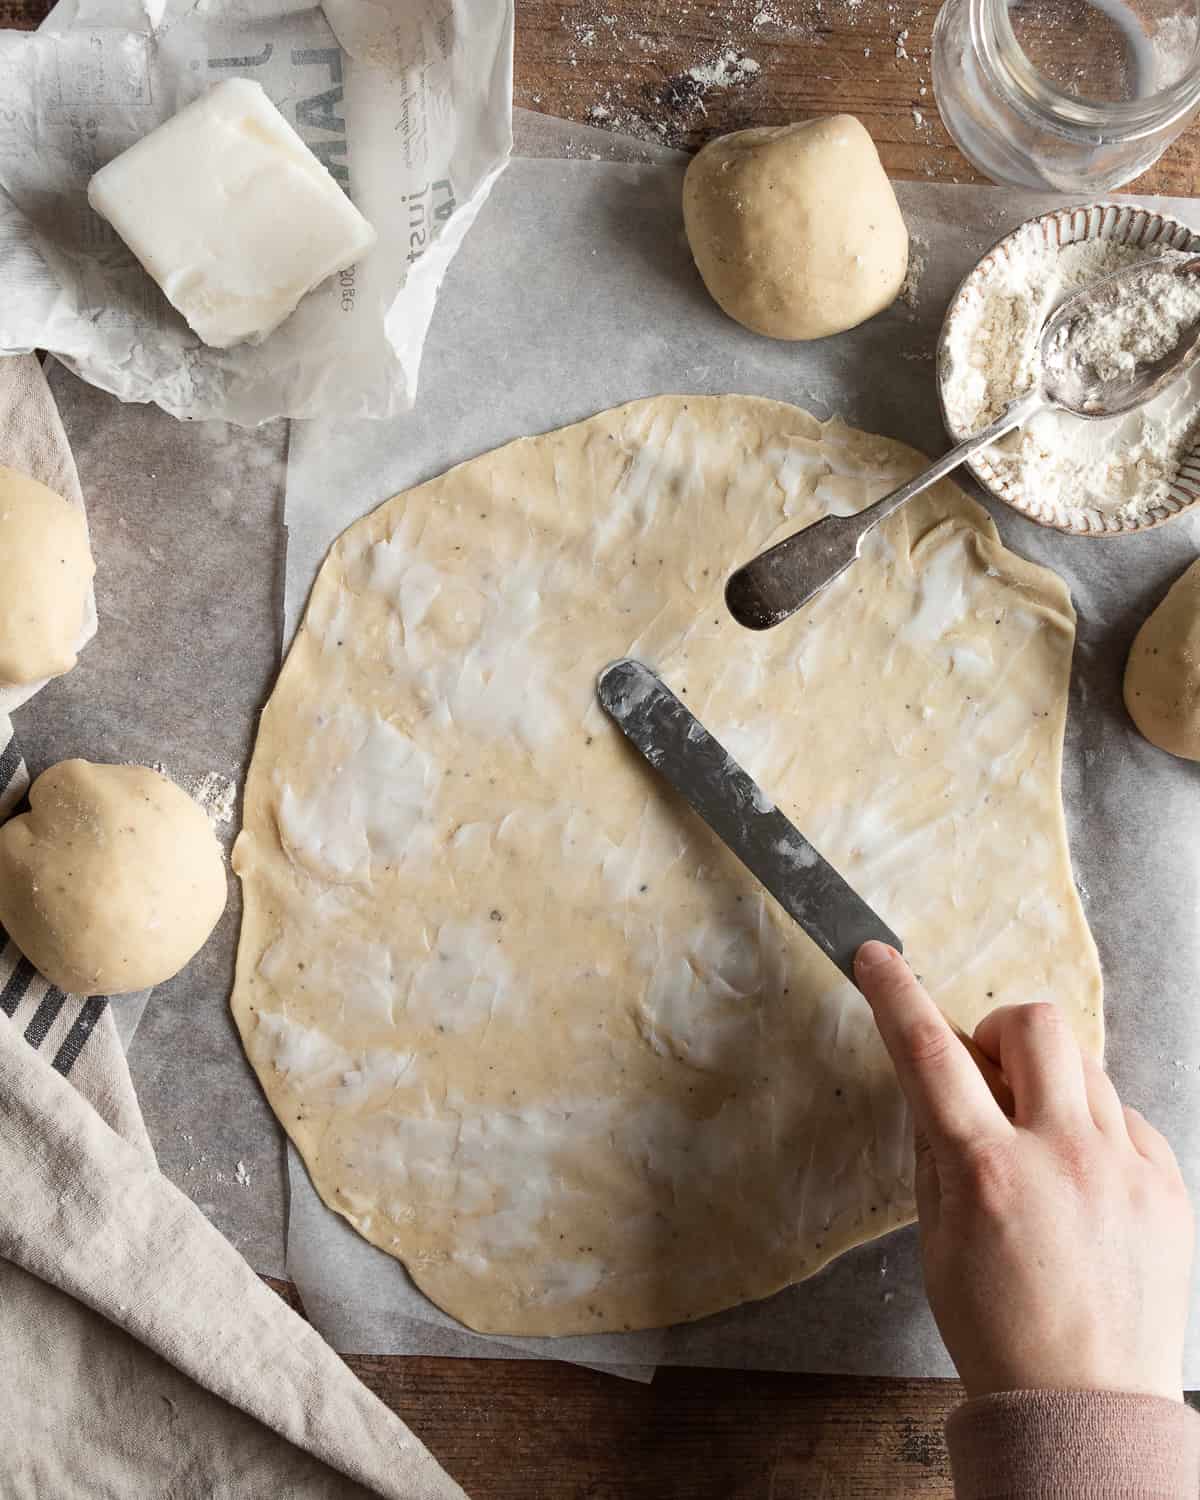 Lard spread on the dough